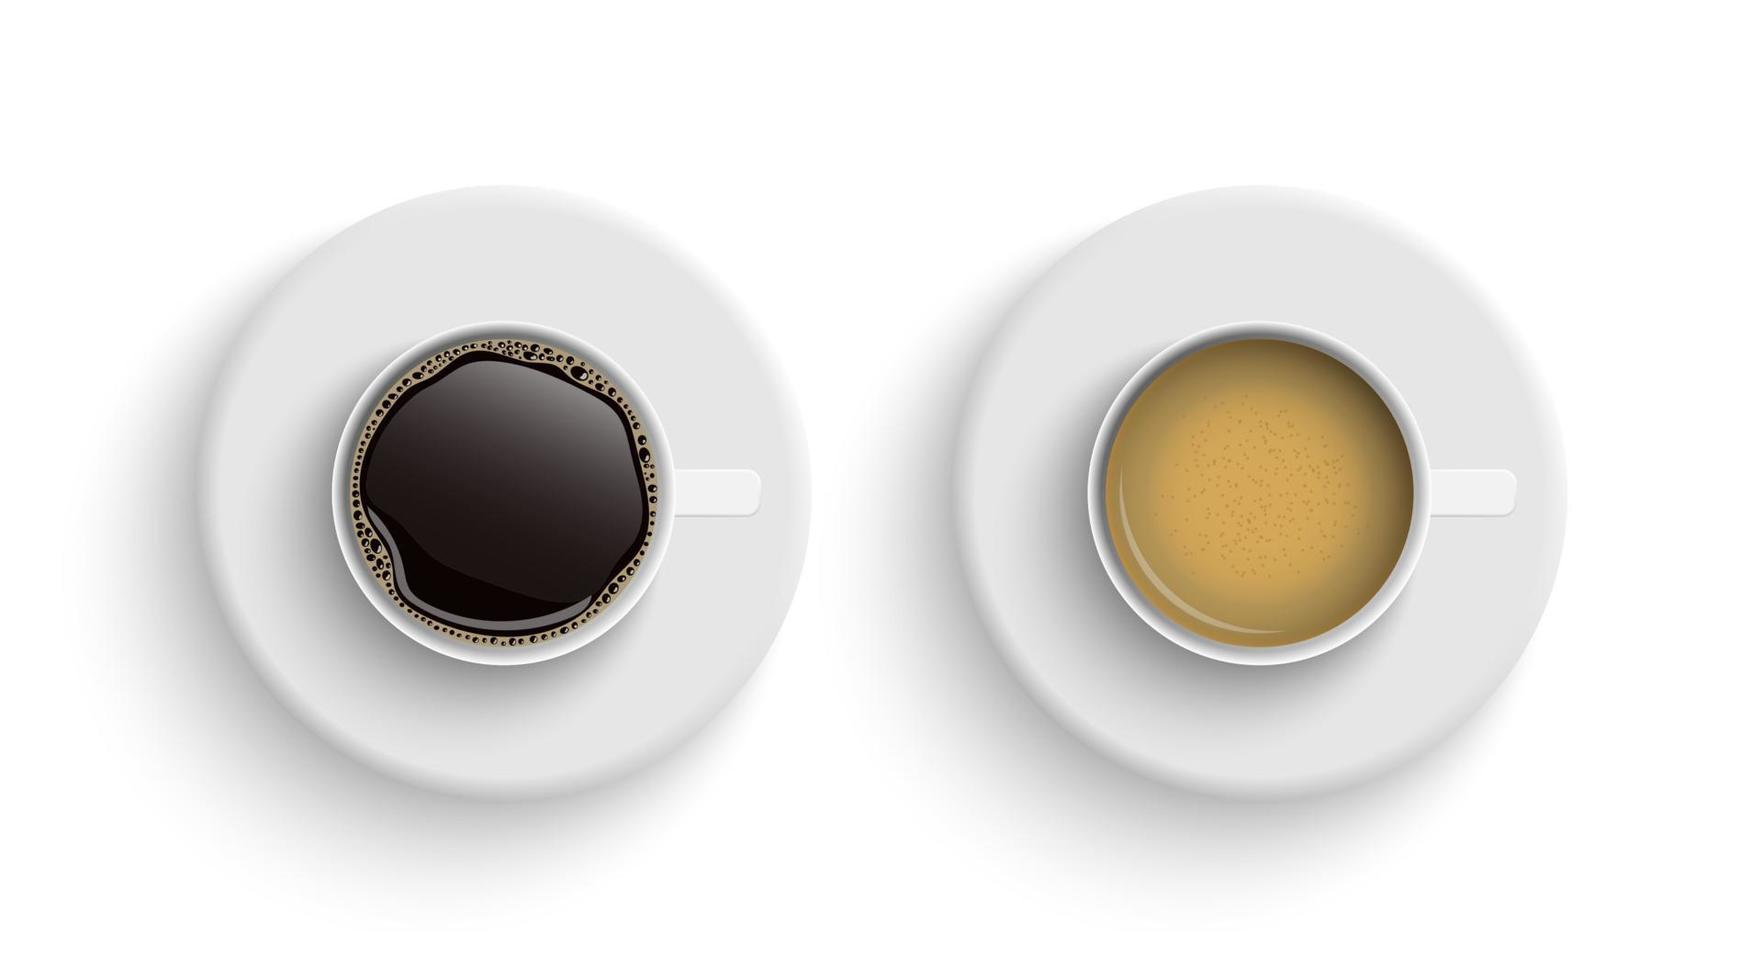 café em xícaras brancas vista de cima, café preto, cappuccino espresso, café com leite, mocha, americano, isolado no fundo branco, ilustração vetorial vetor